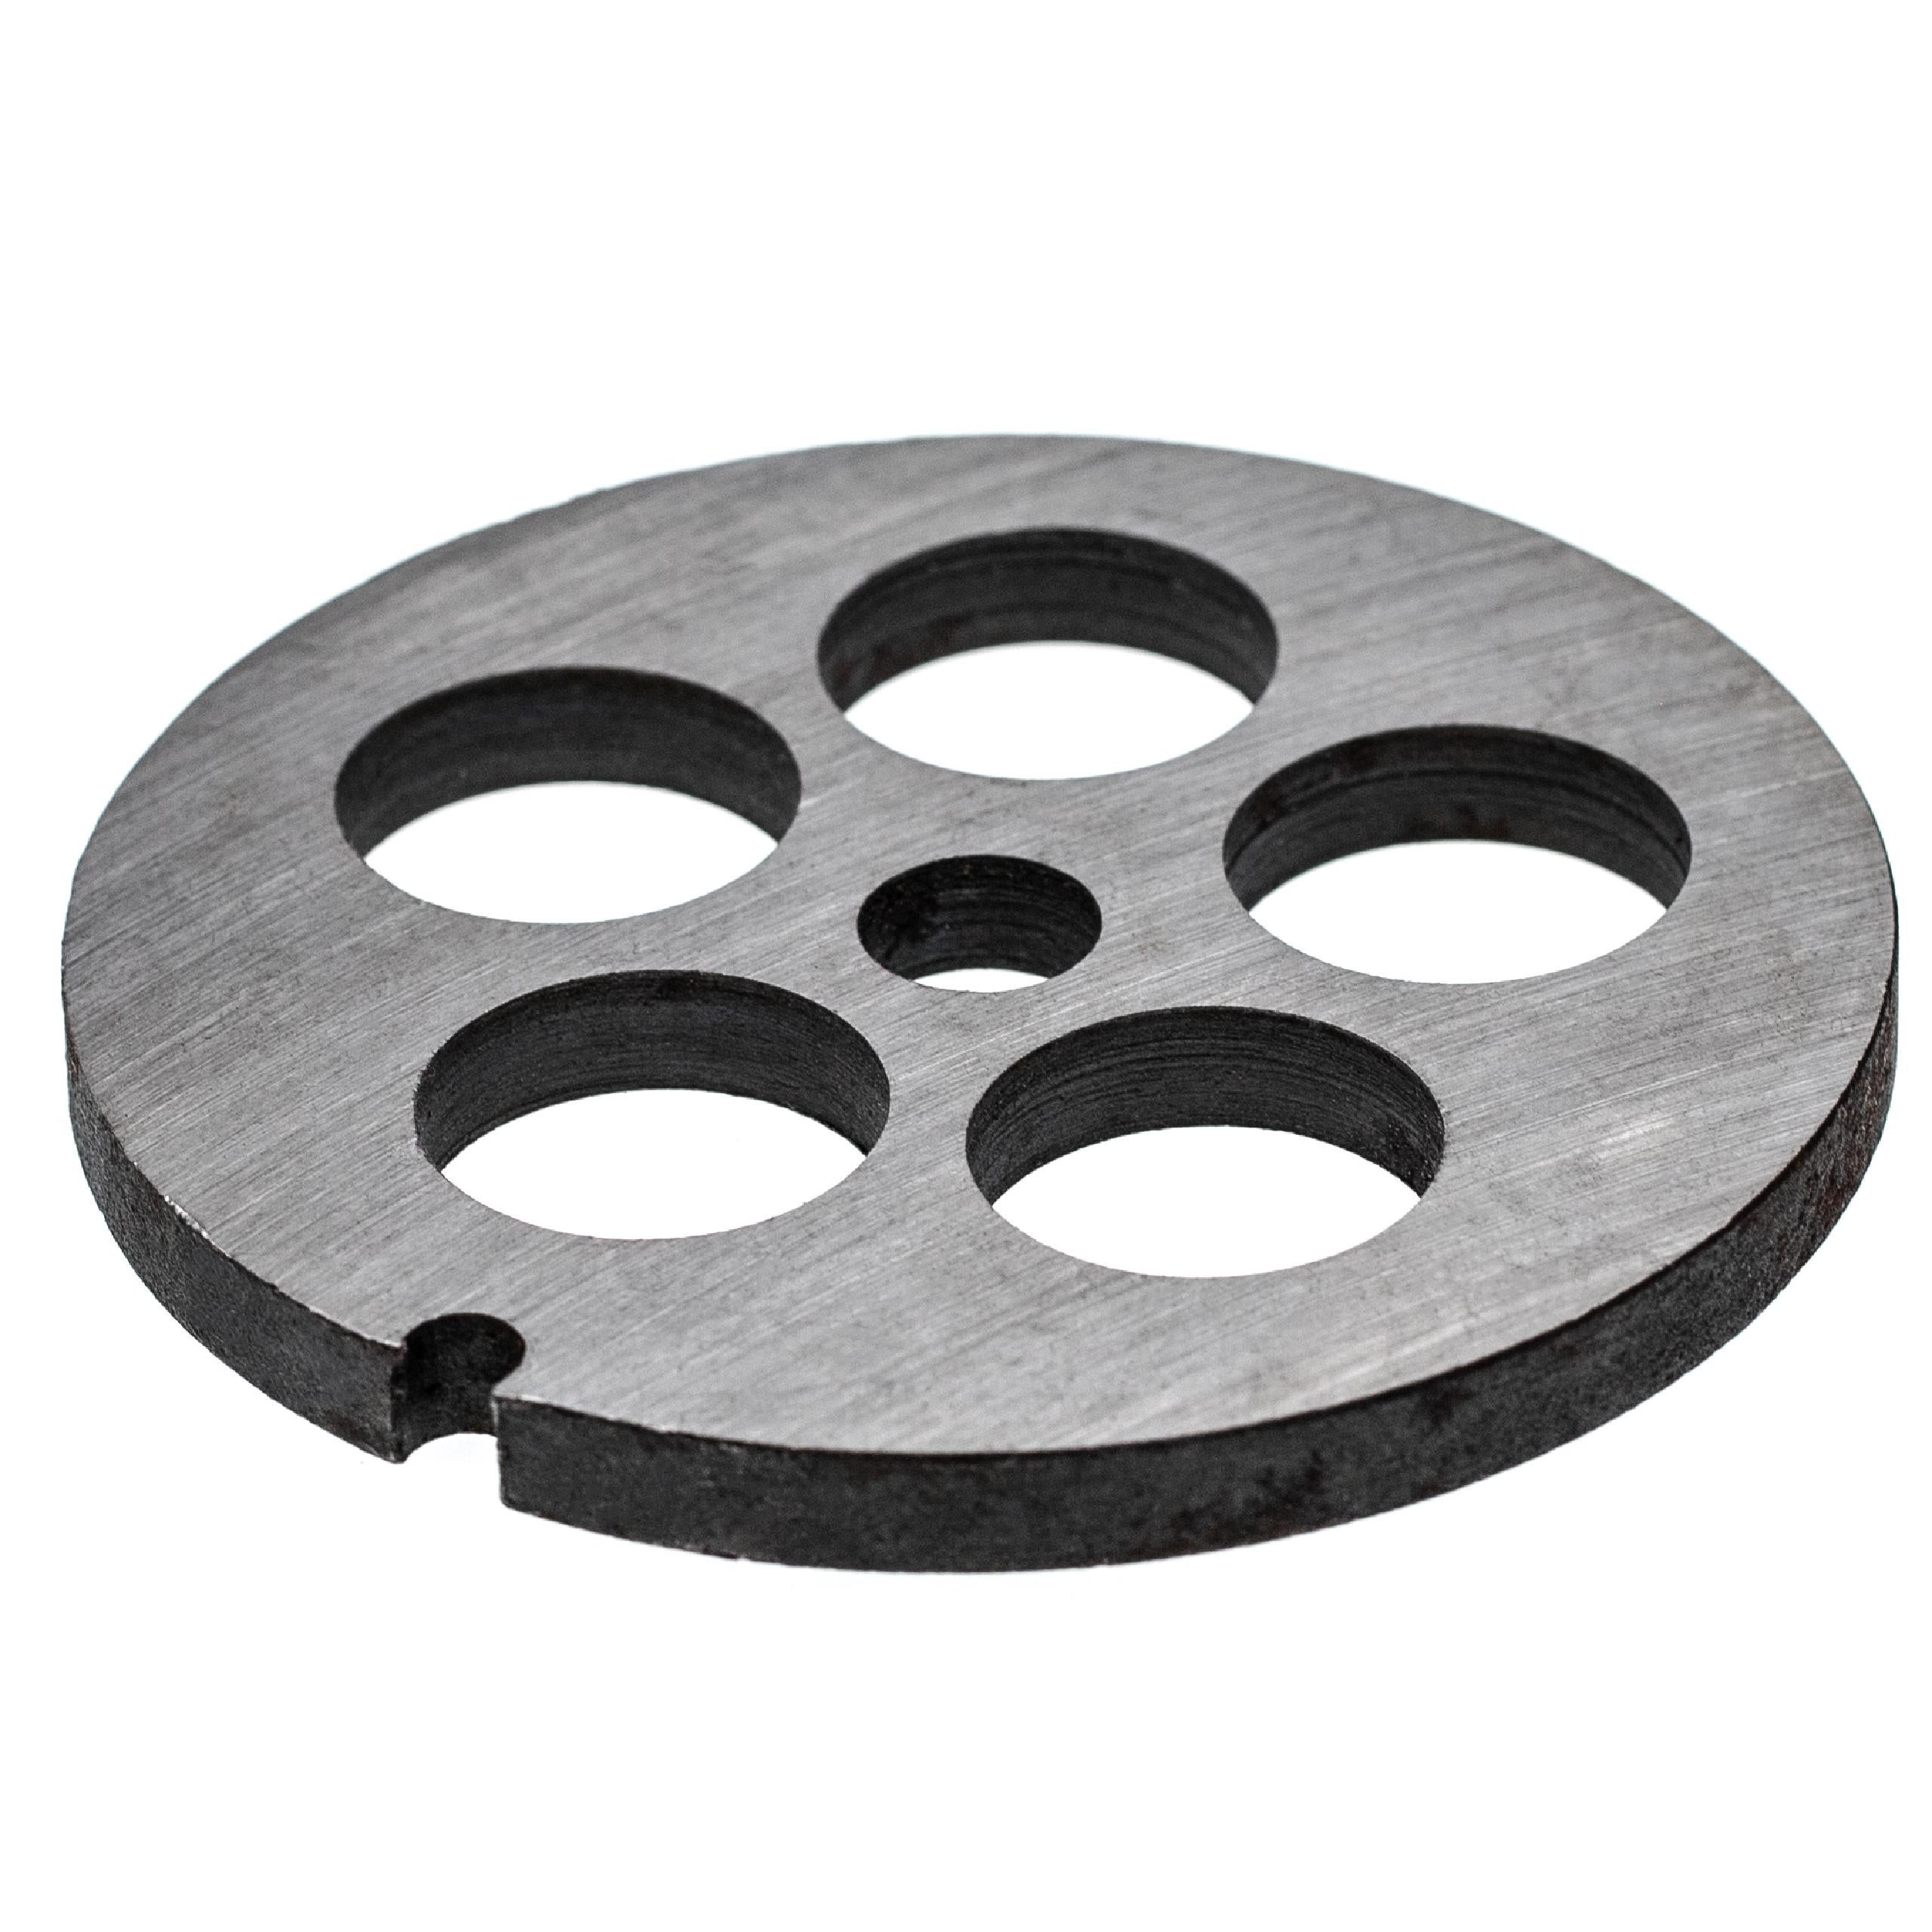 foro centrale 13,4mm diametro fori 4mm vhbw piastra forata 32 KBS Porkert tritacarne acciaio per esempio compatibile con ADE Fama Caso 